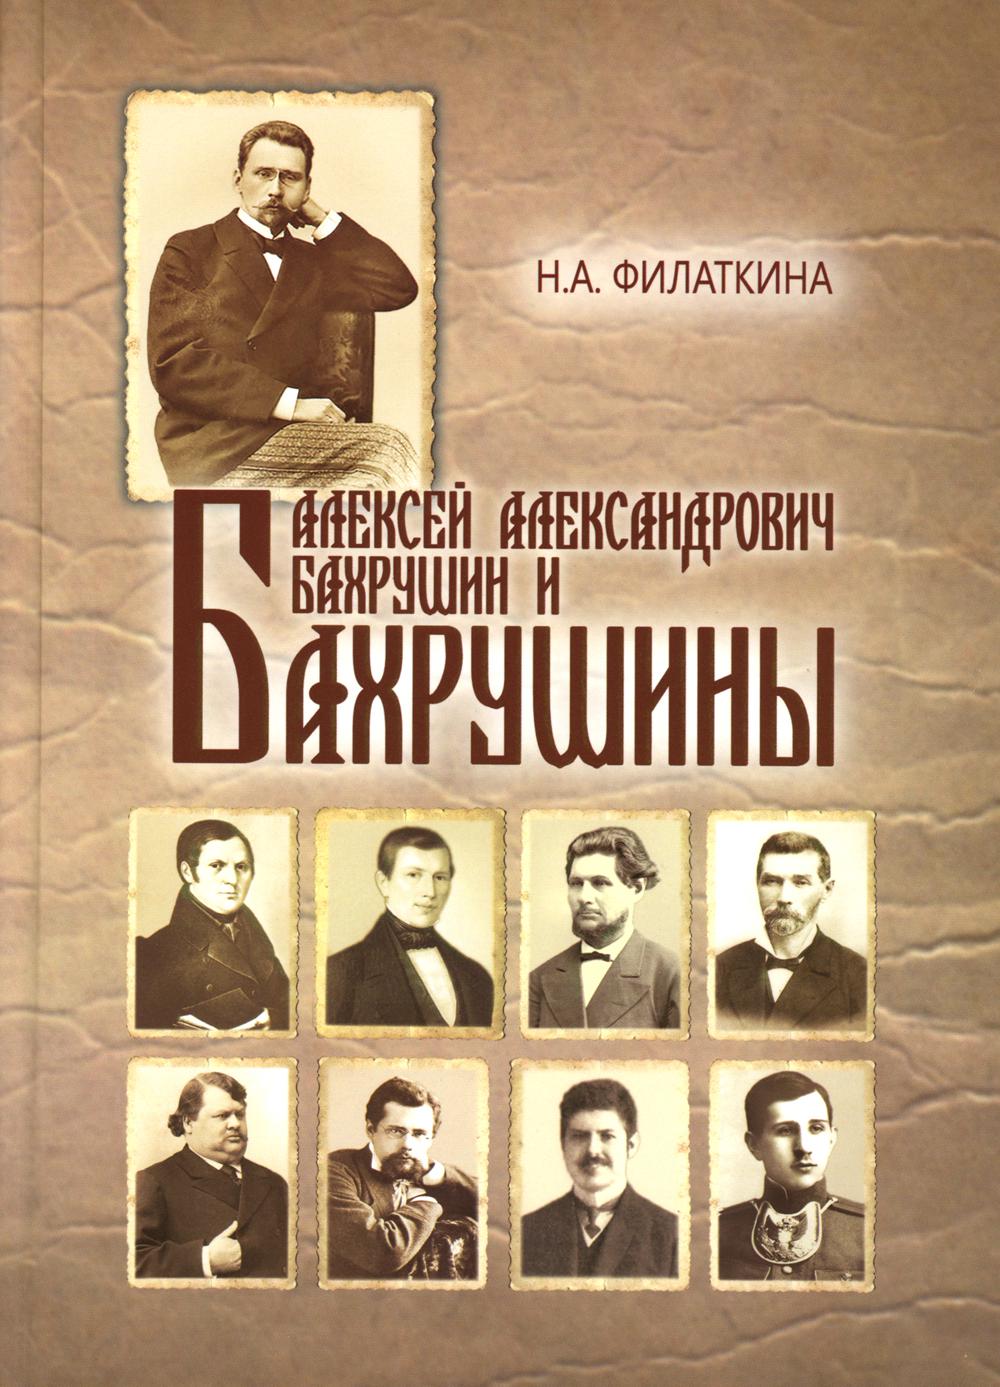 Алексей Александрович Бахрушин и Бахрушины